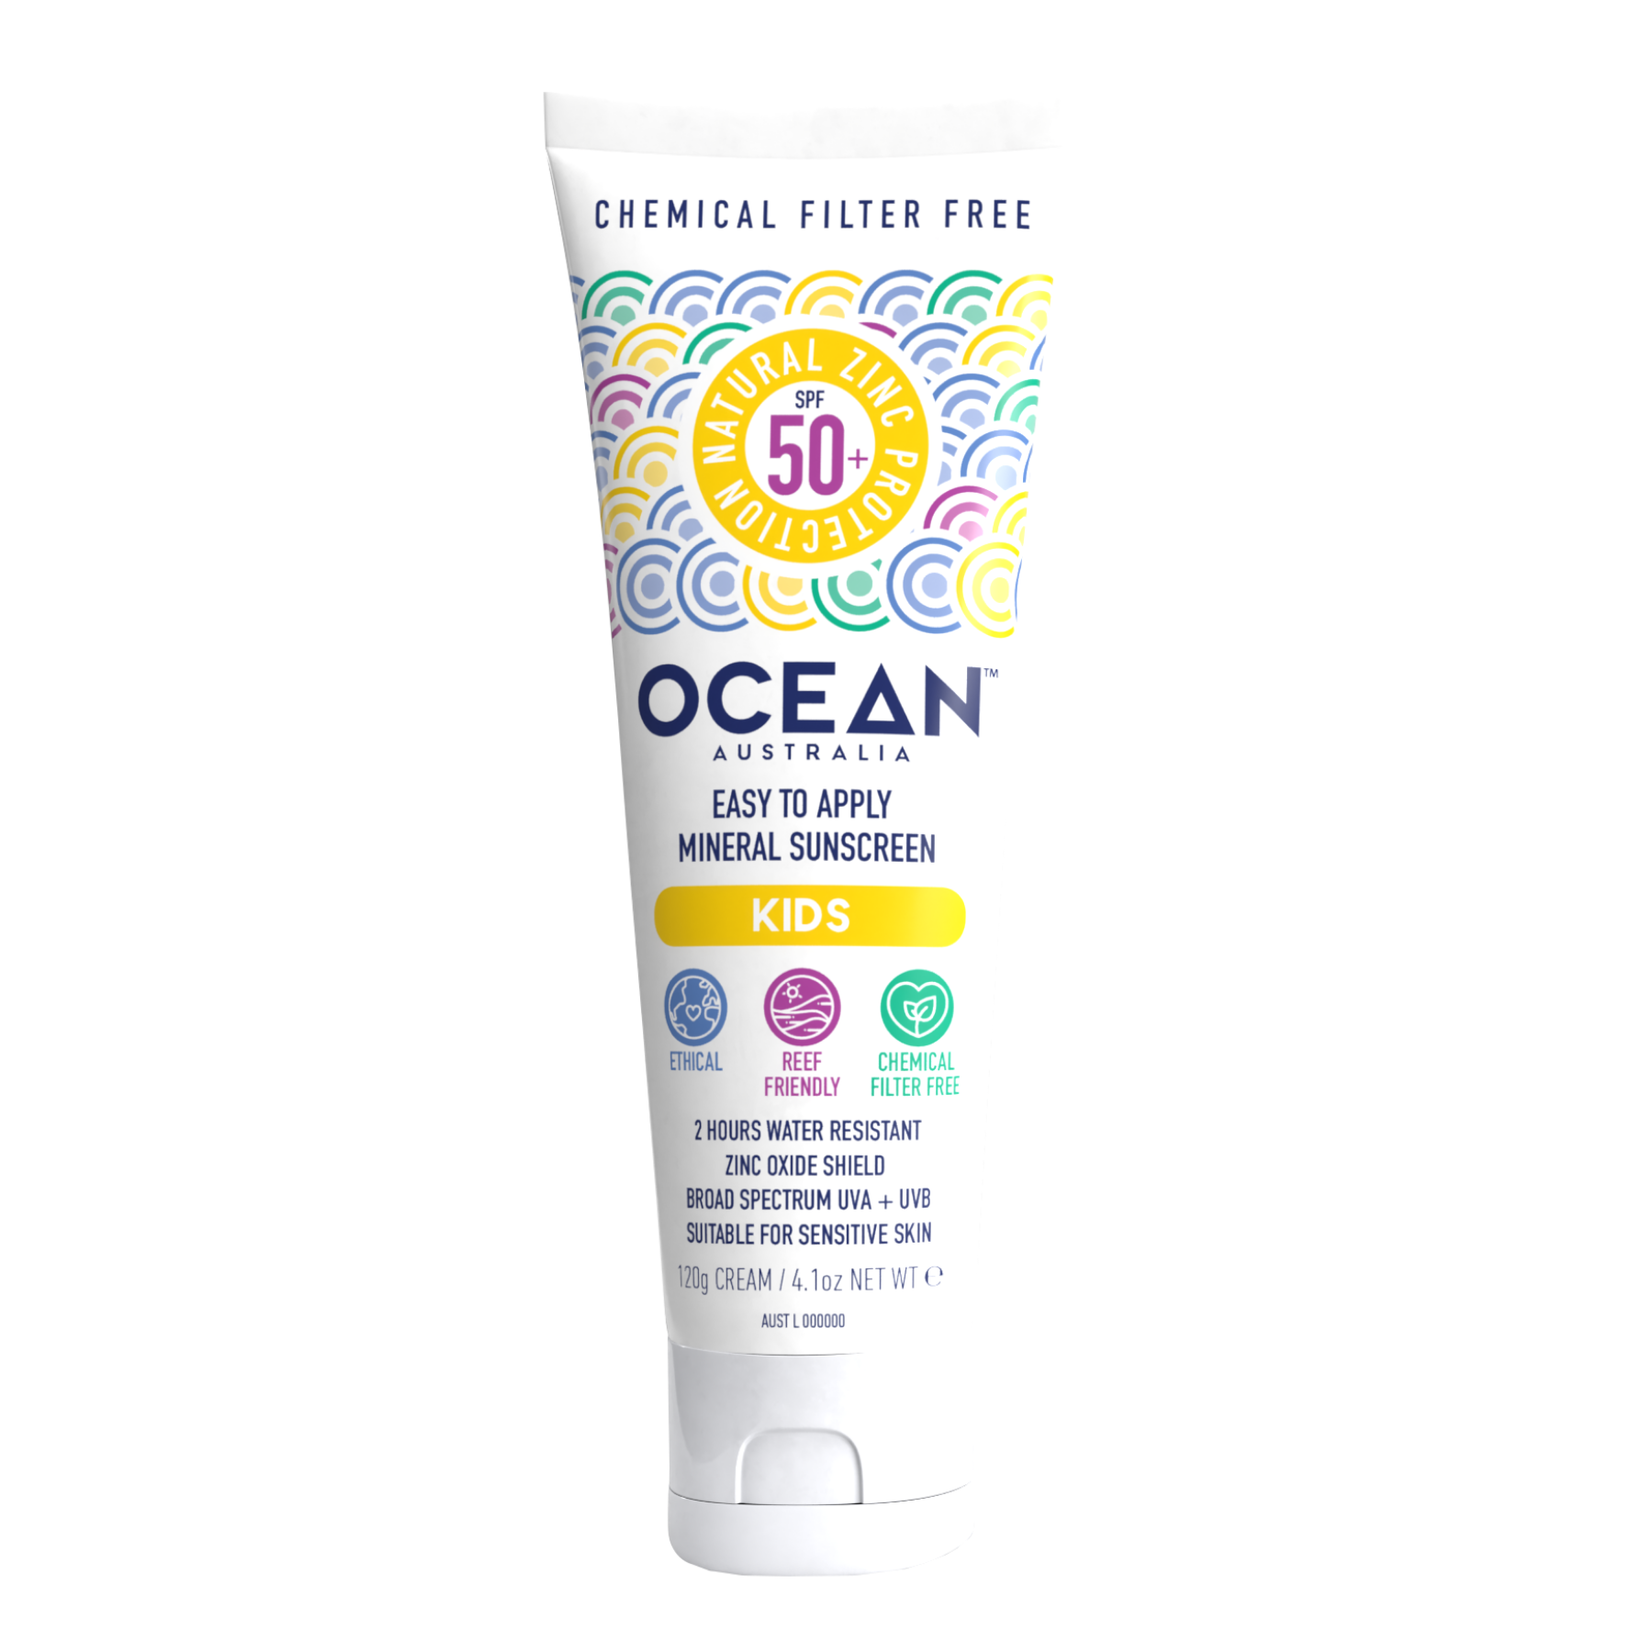 Ocean Australia Ocean Australia Kids Sunscreen 120g SPF 50+